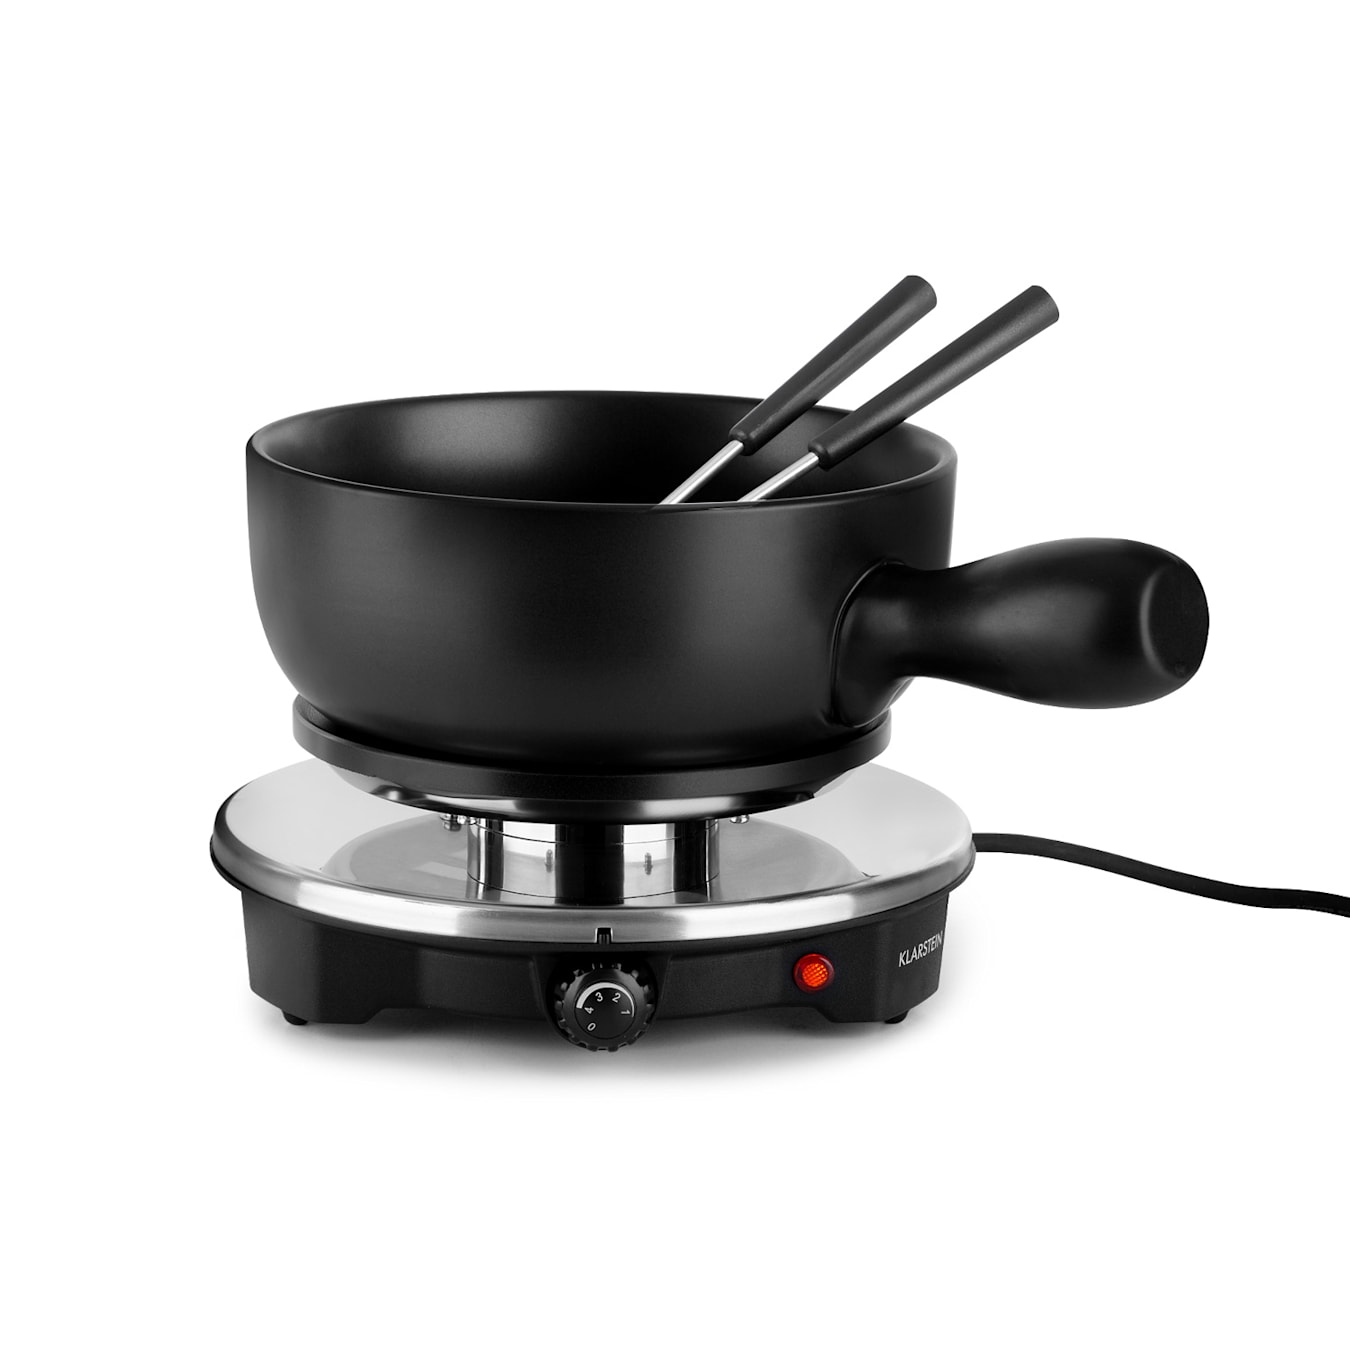 Sirloin Appareil à fondue & raclette cuve céramique 1200W - noir